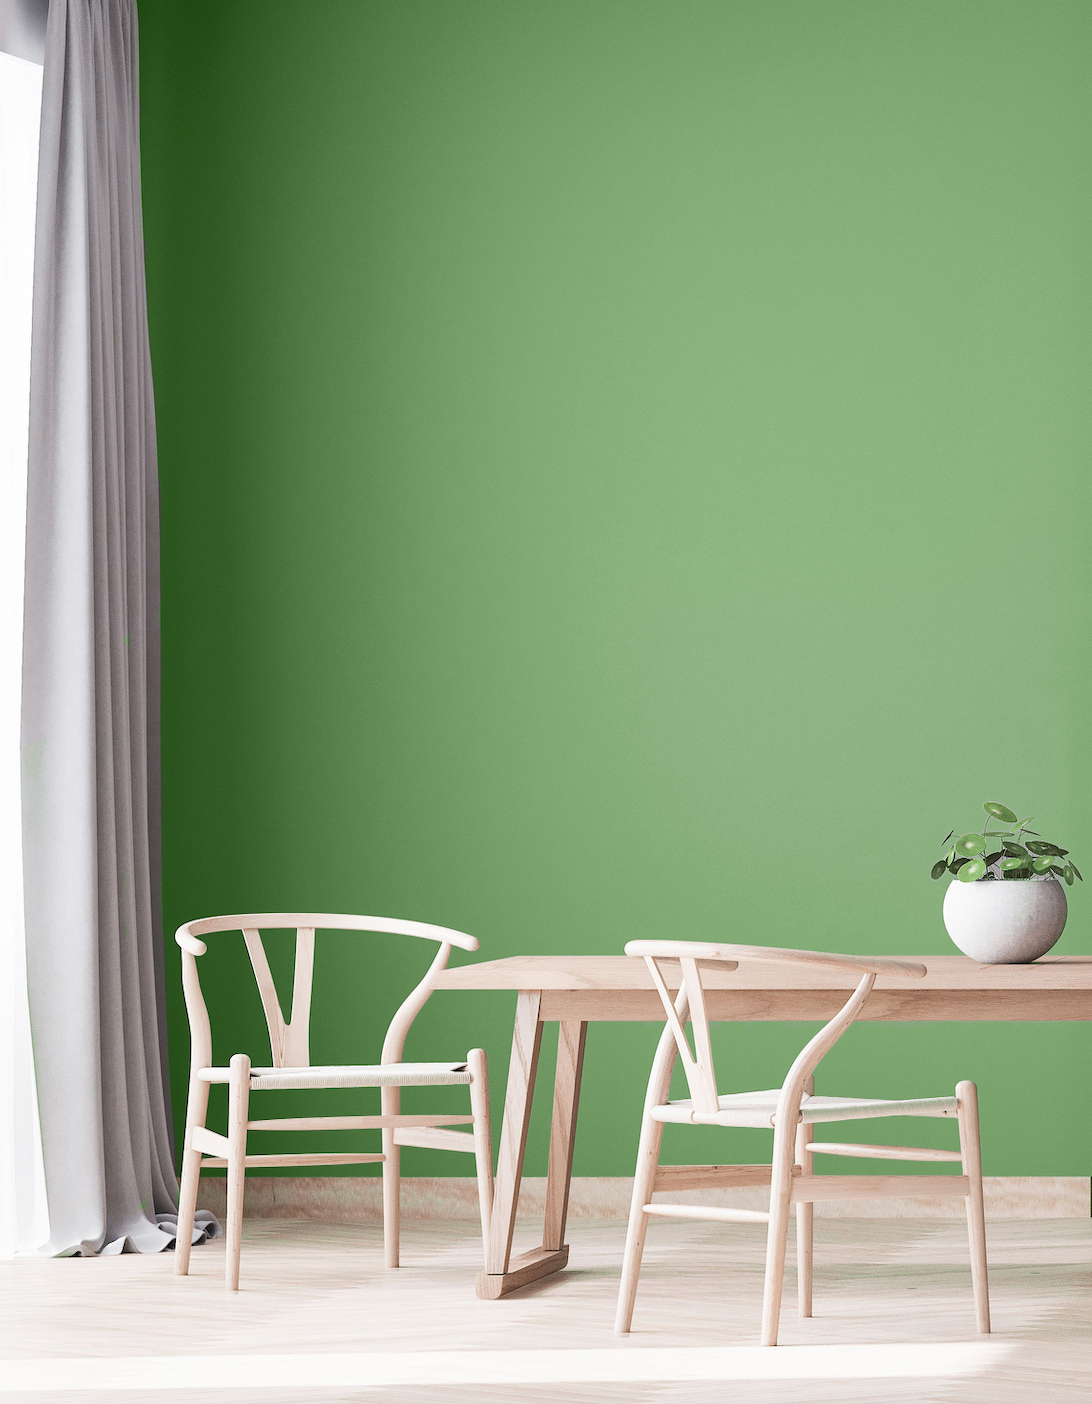 YesColours premium Mellow Green paint swatch Dulux paint, Coat Paint, Lick Paint